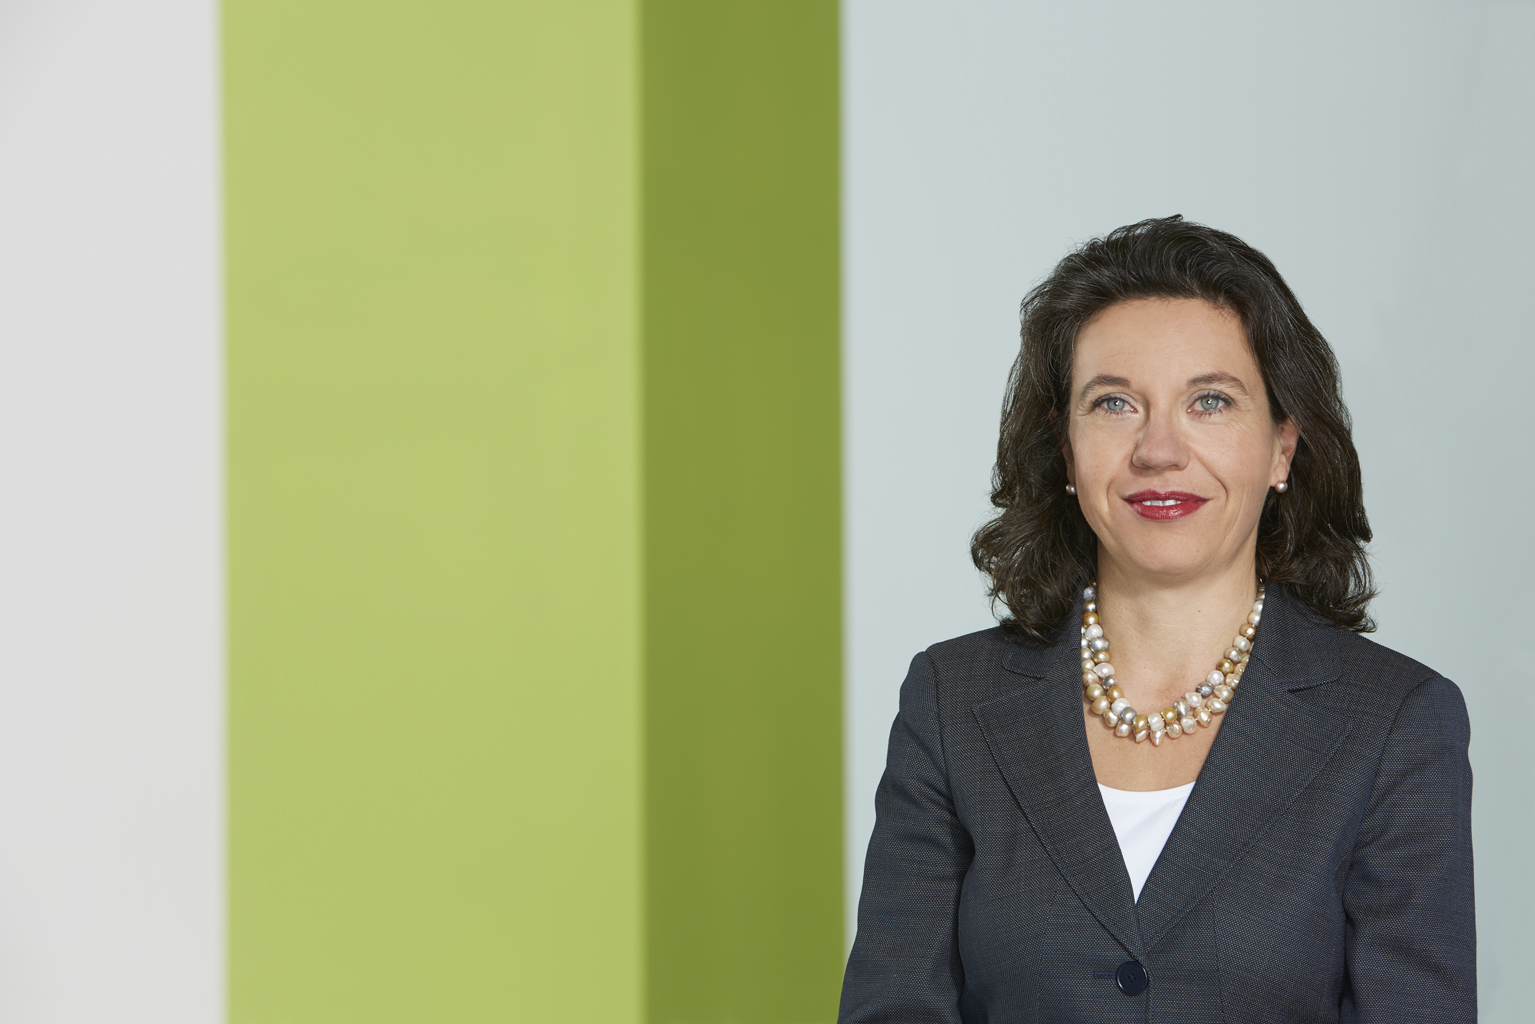 Regina Brueckner, owner and CEO of Brueckner. © Brückner